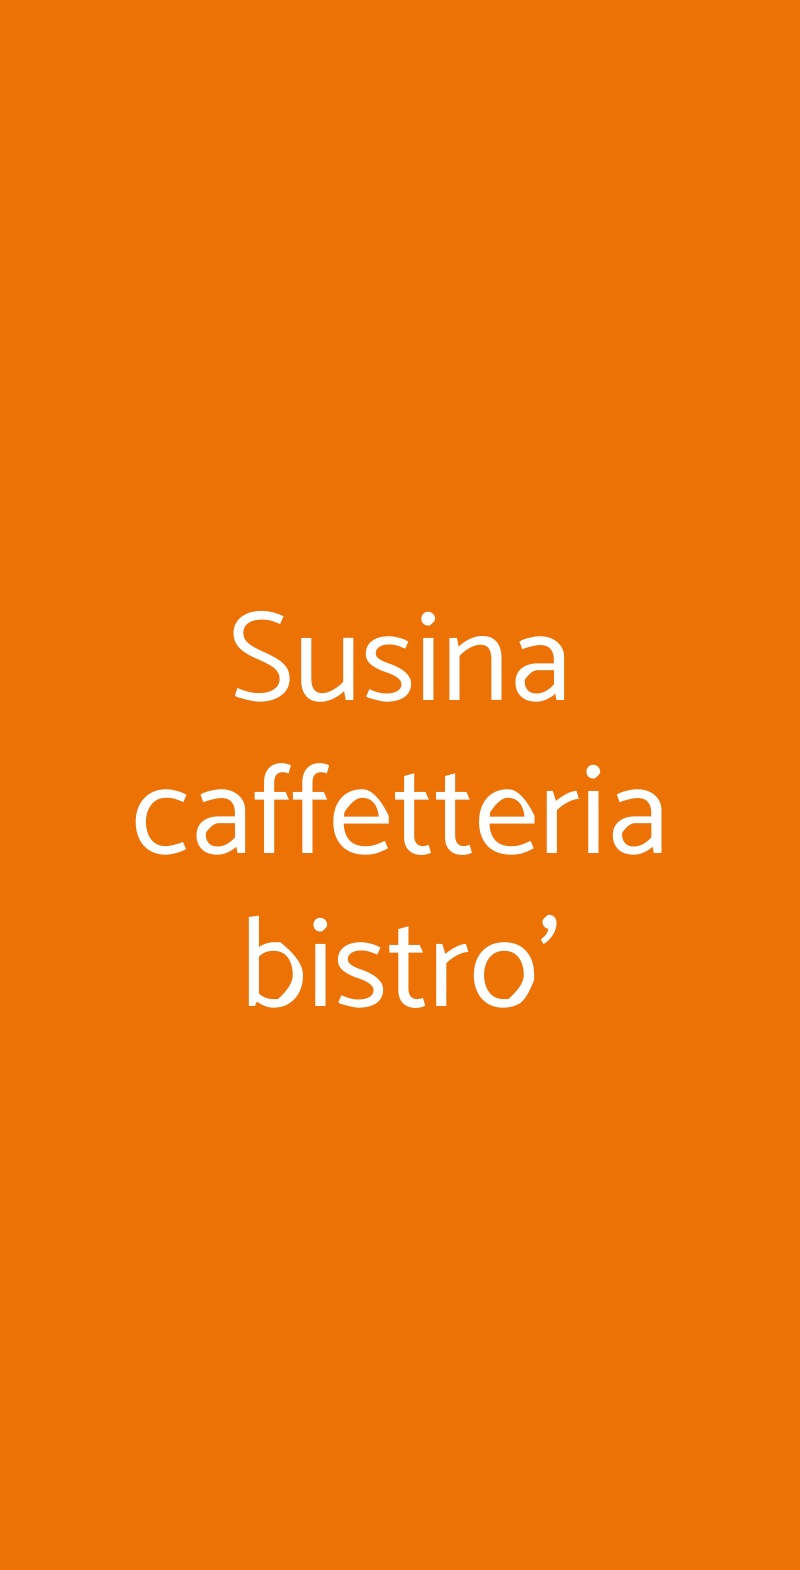 Susina caffetteria bistro' Roma menù 1 pagina